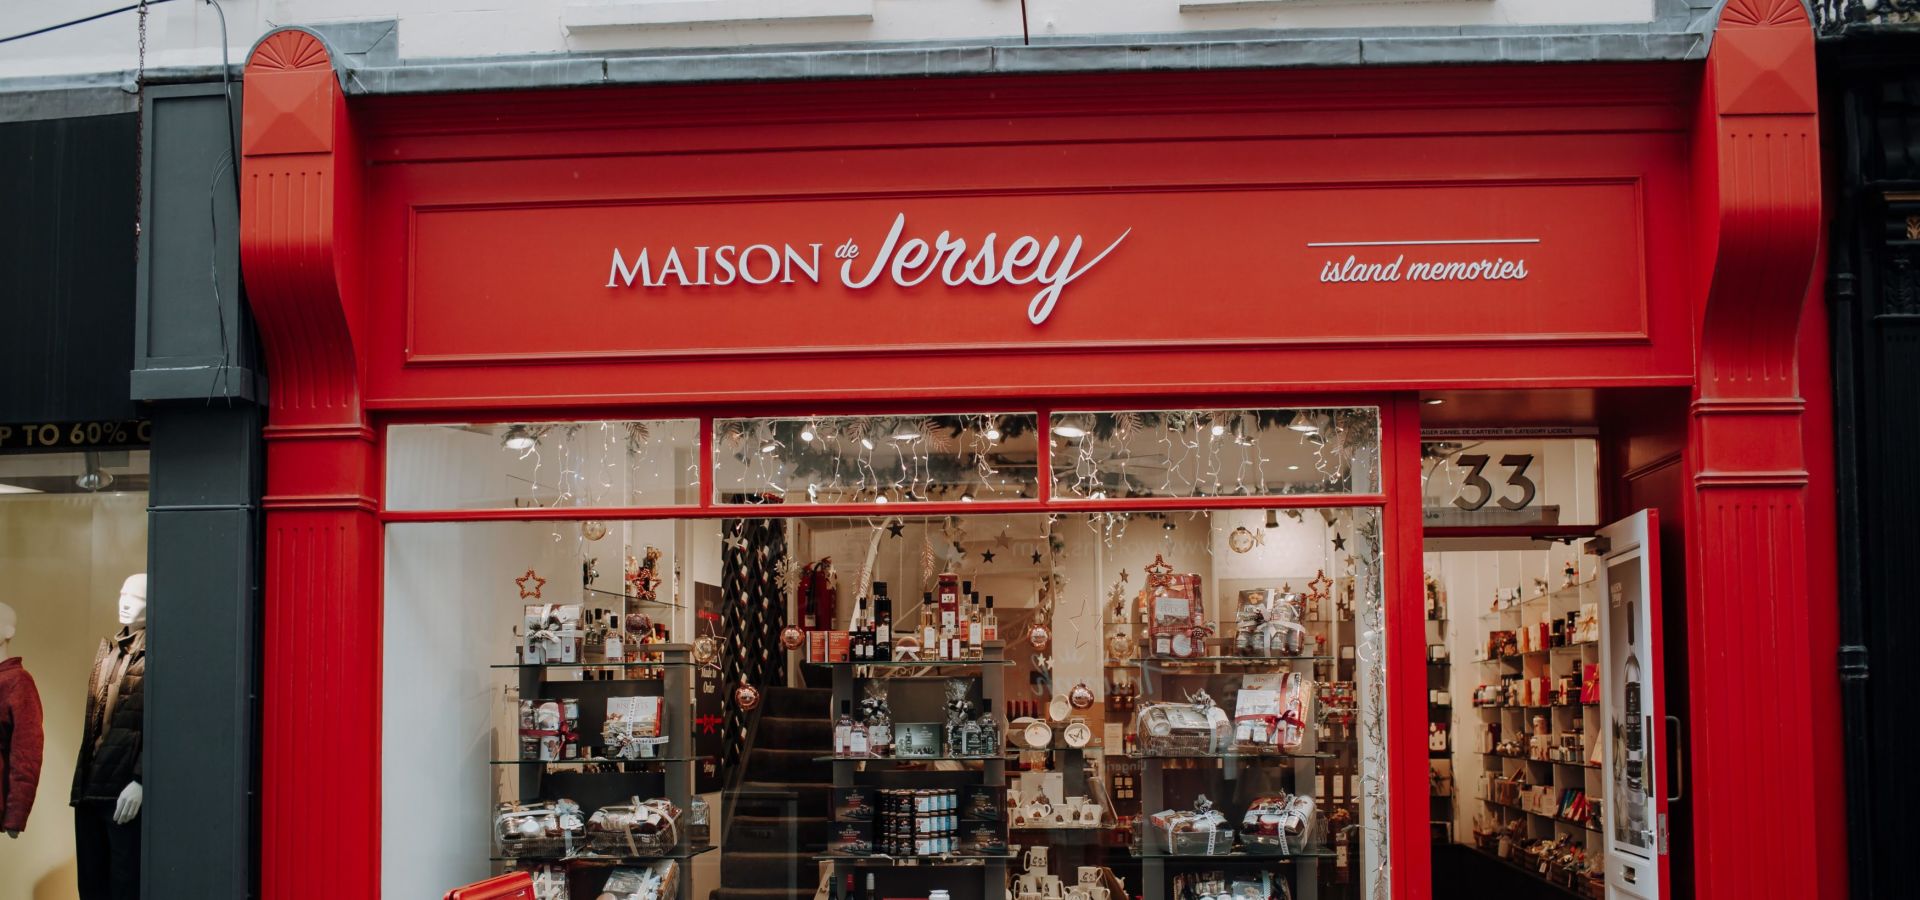 Shop Front of Maison de Jersey